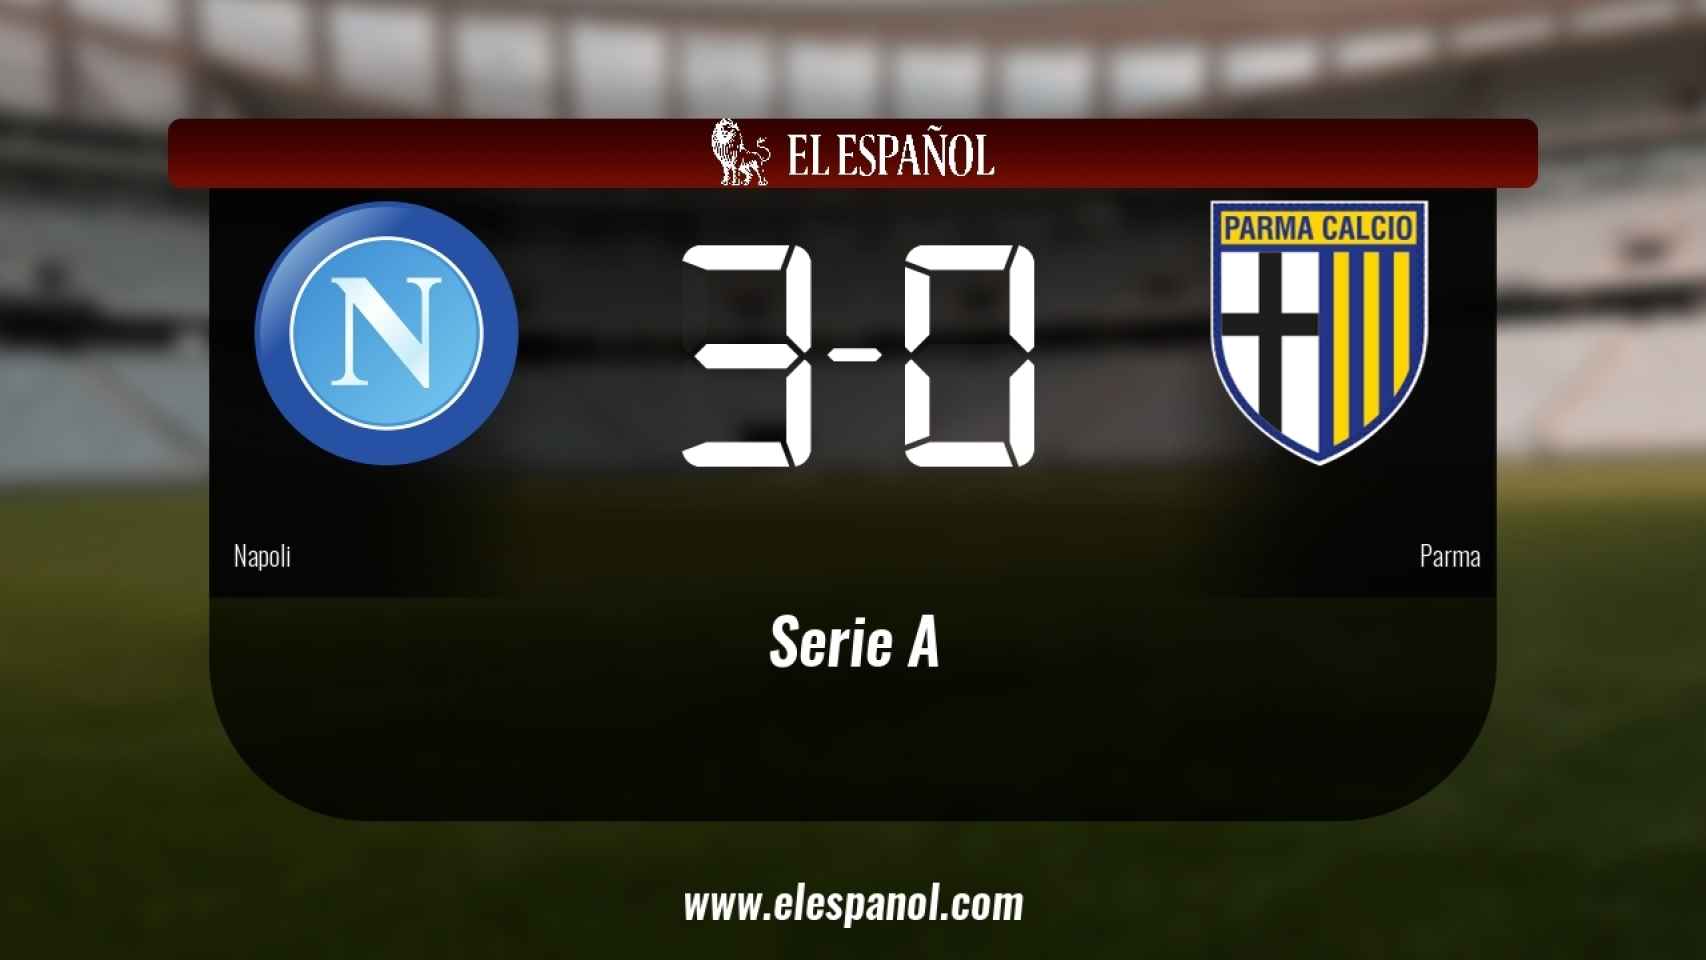 Victoria 3-0 del Nápoles frente al Parma